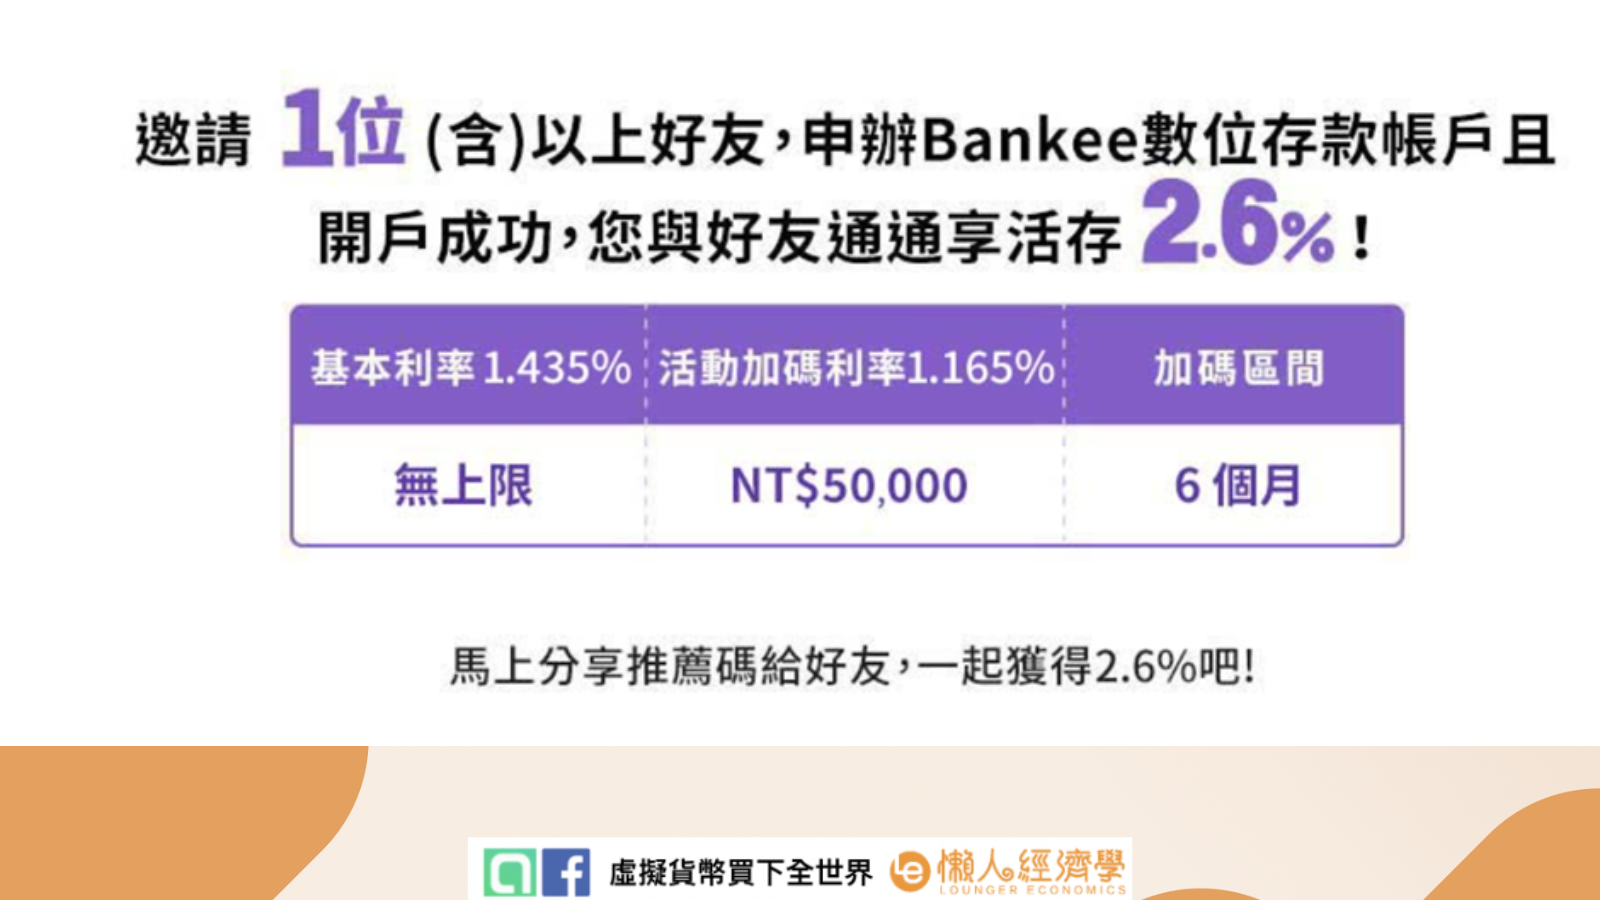 邀請一位以上好友，申辦Bankee存款帳戶，您與好友通享活存2.6%